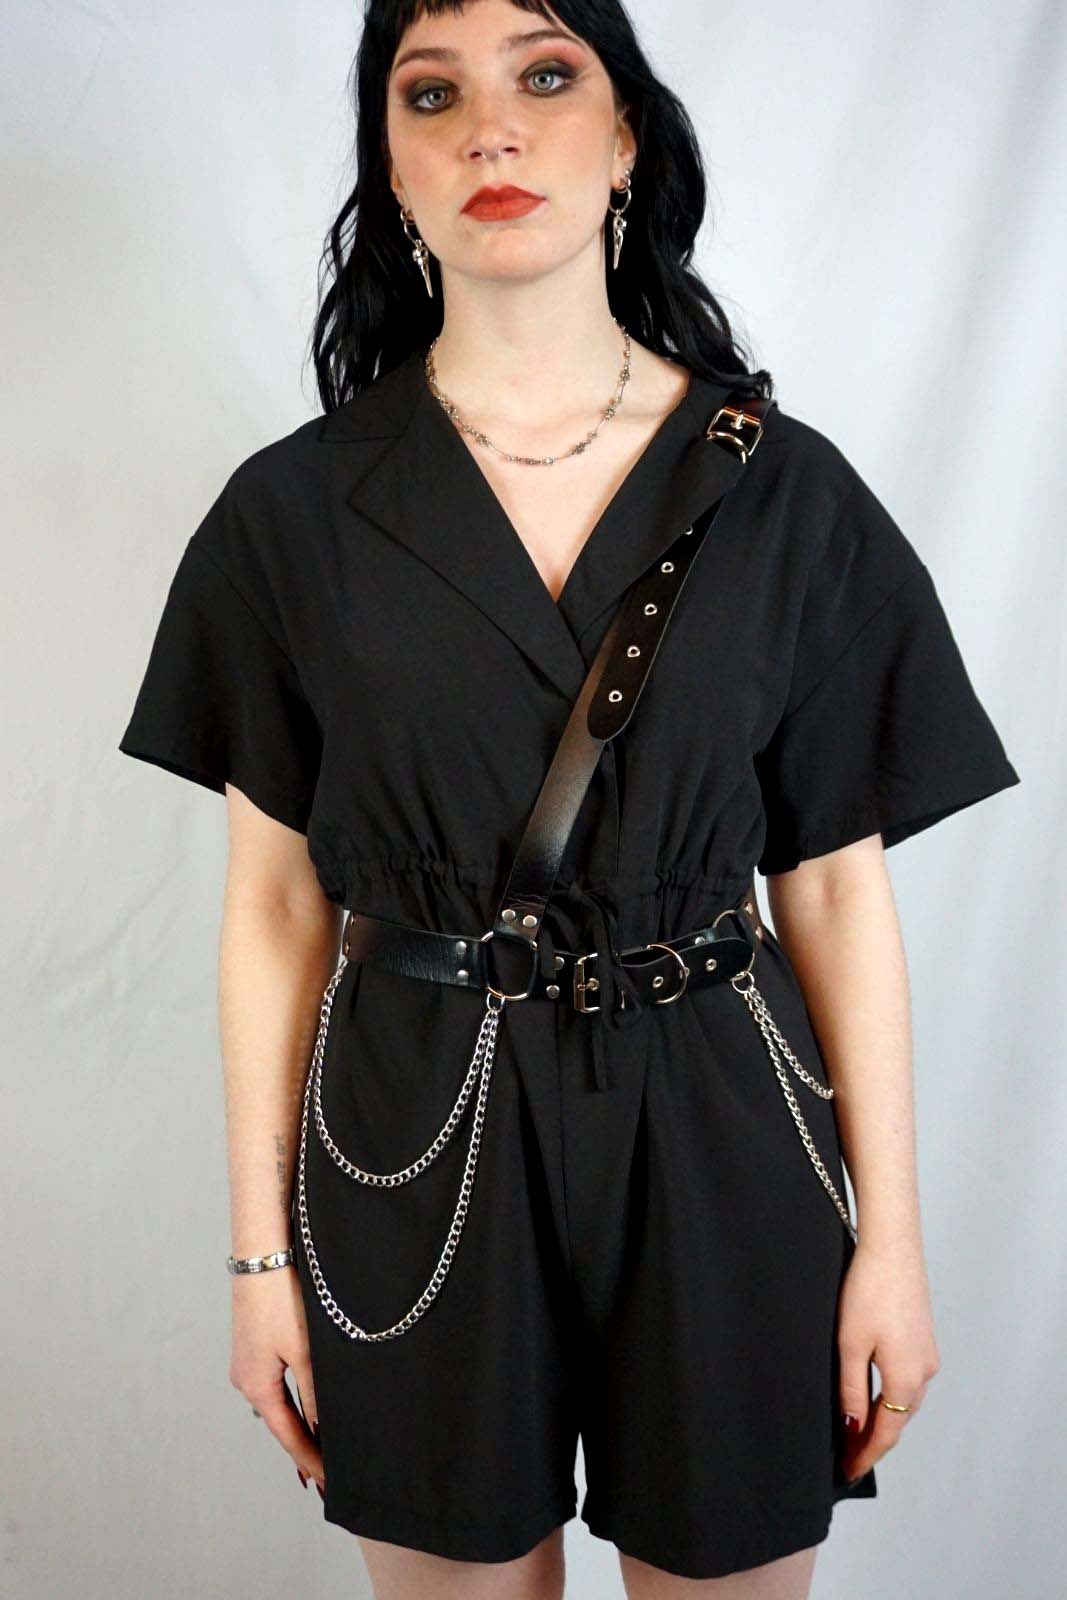 Black romper perfecto collar harness